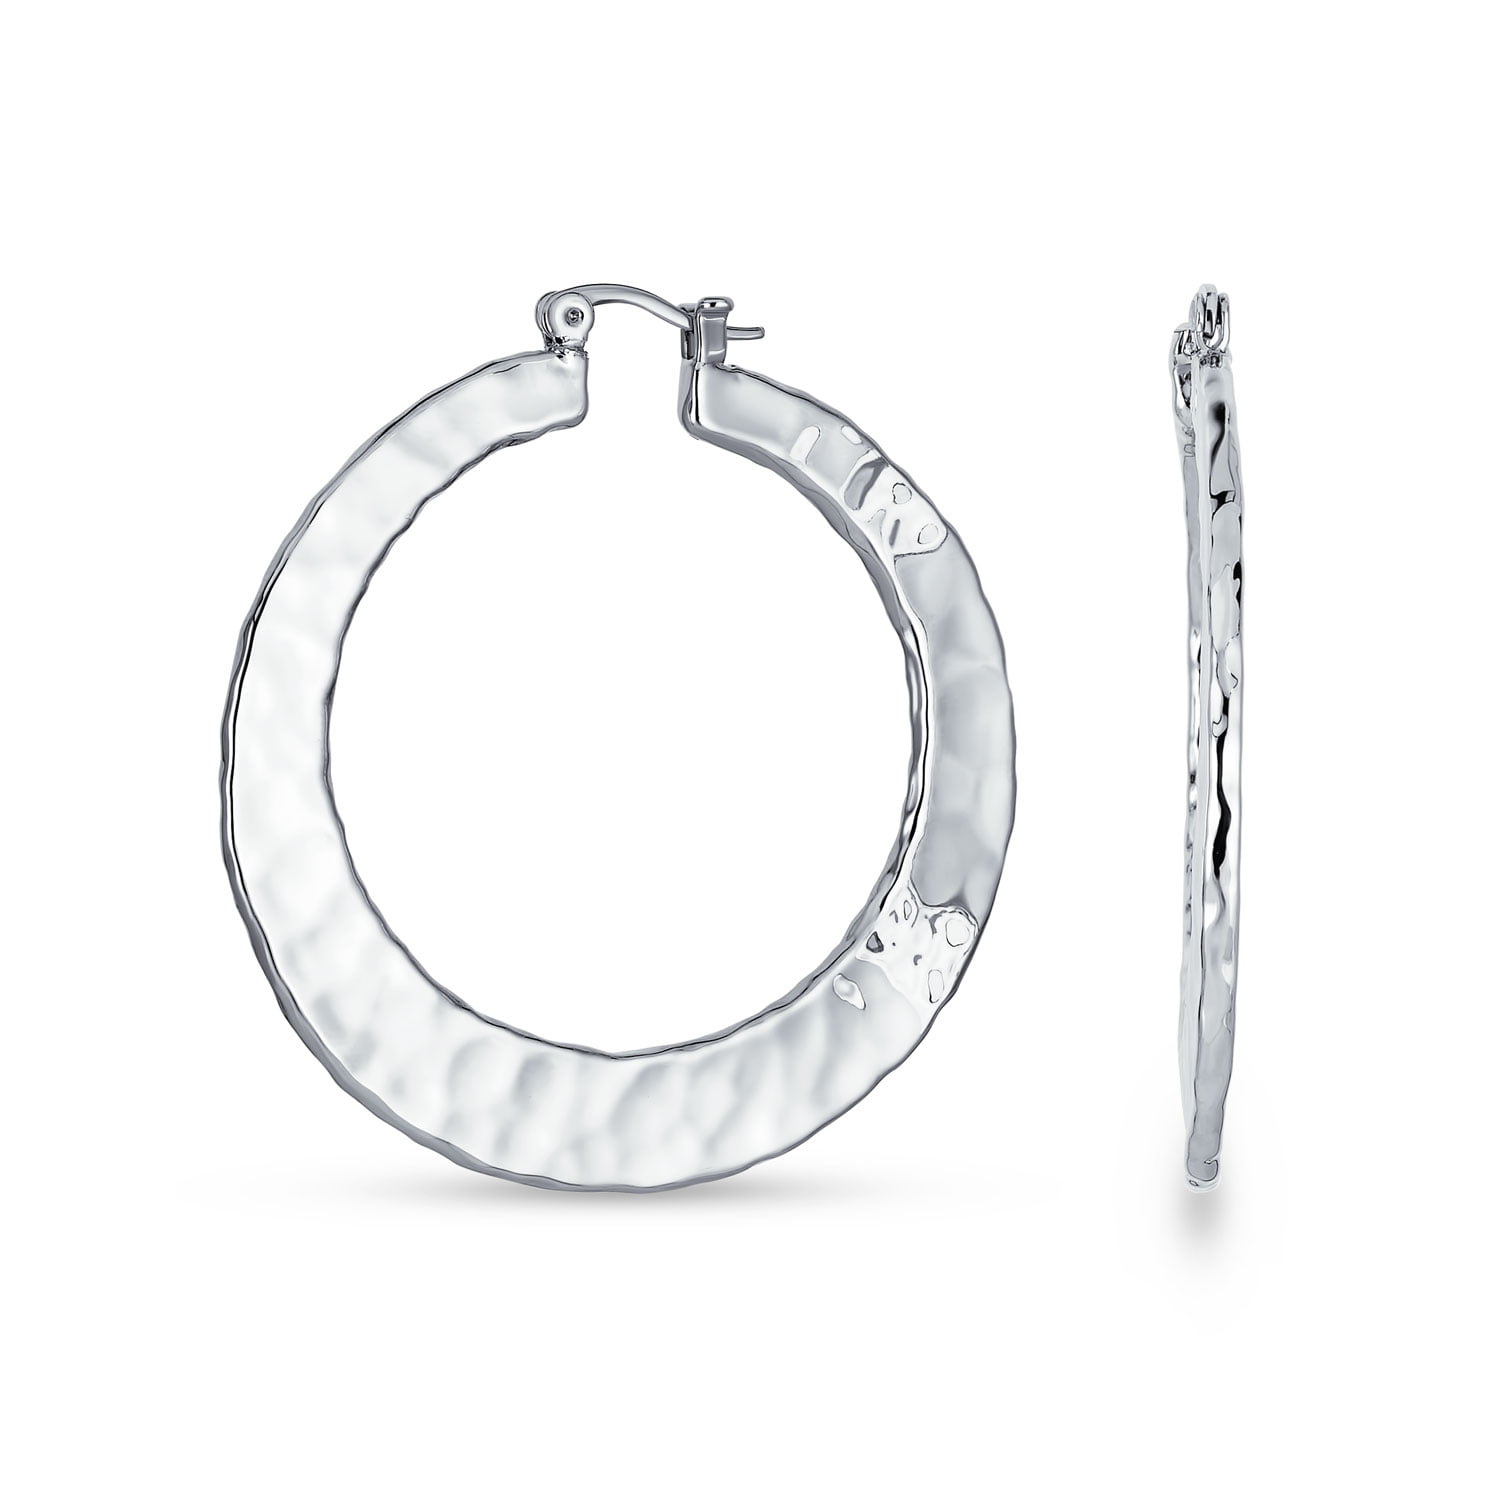 Textured solid silver hoop earrings  Crescent shaped hoop stud earrings